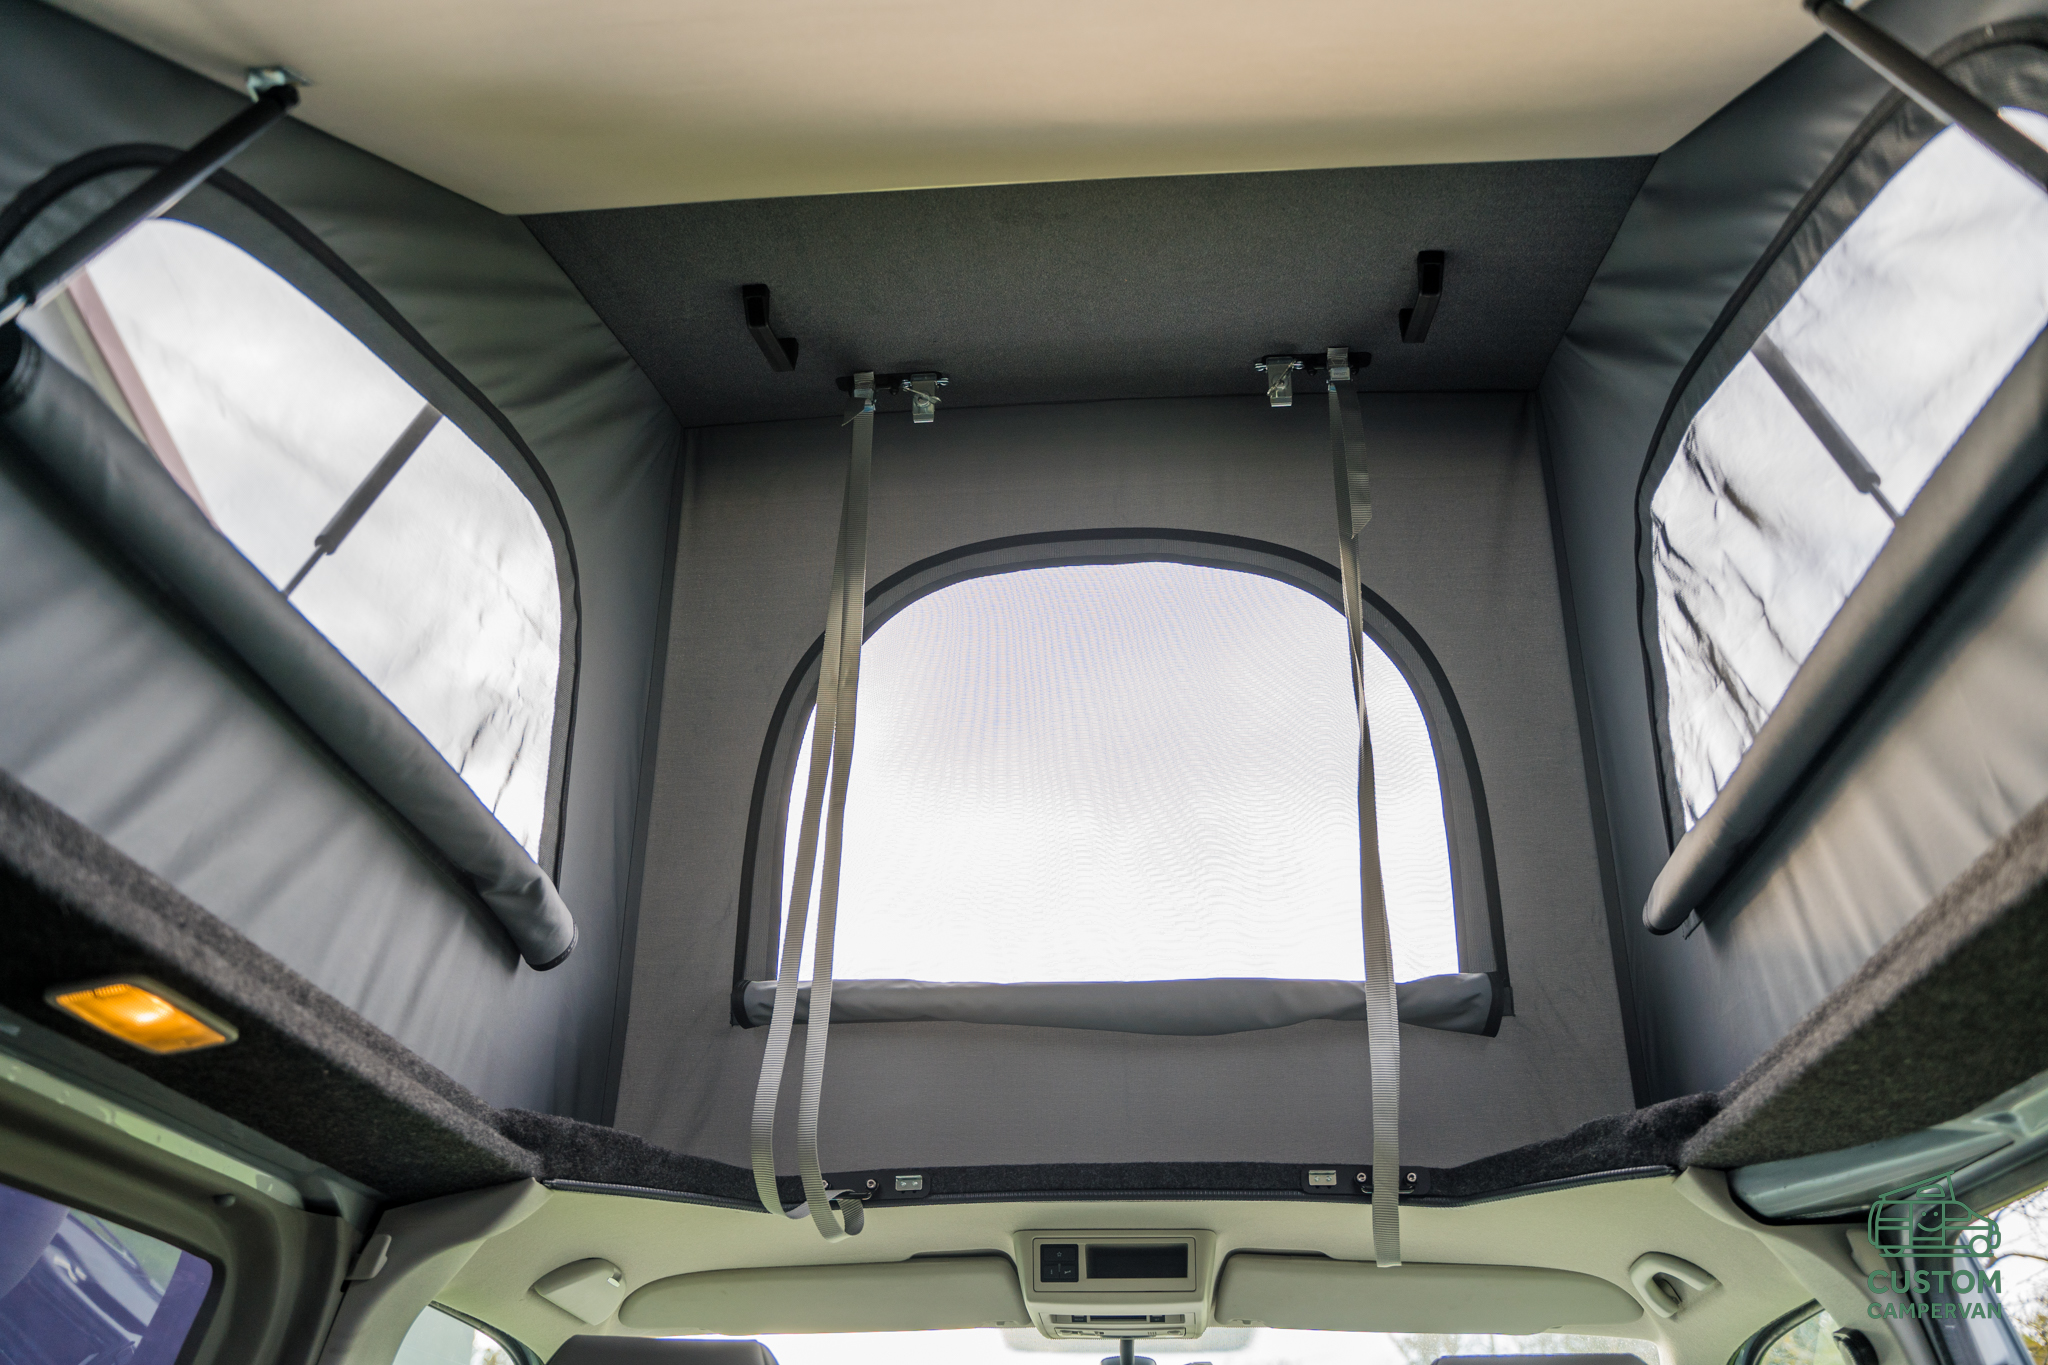 podnoszony dach sypialny, dach sypialny, camproof, podnoszony dach do VW T5, zabudowa meblowe